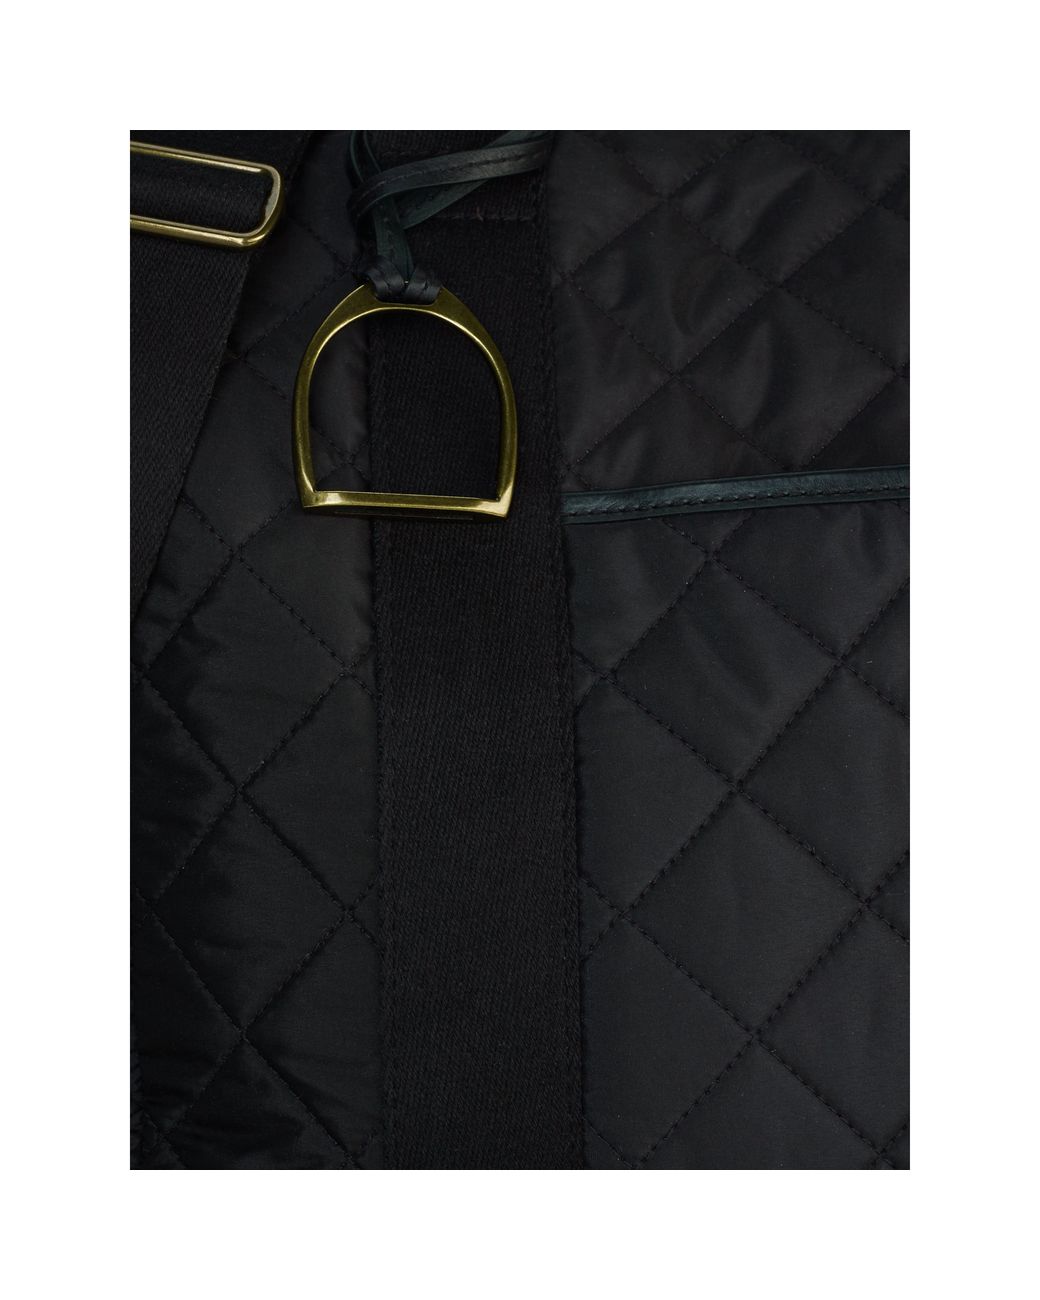 Ralph Lauren Diaper Bag in Black | Lyst